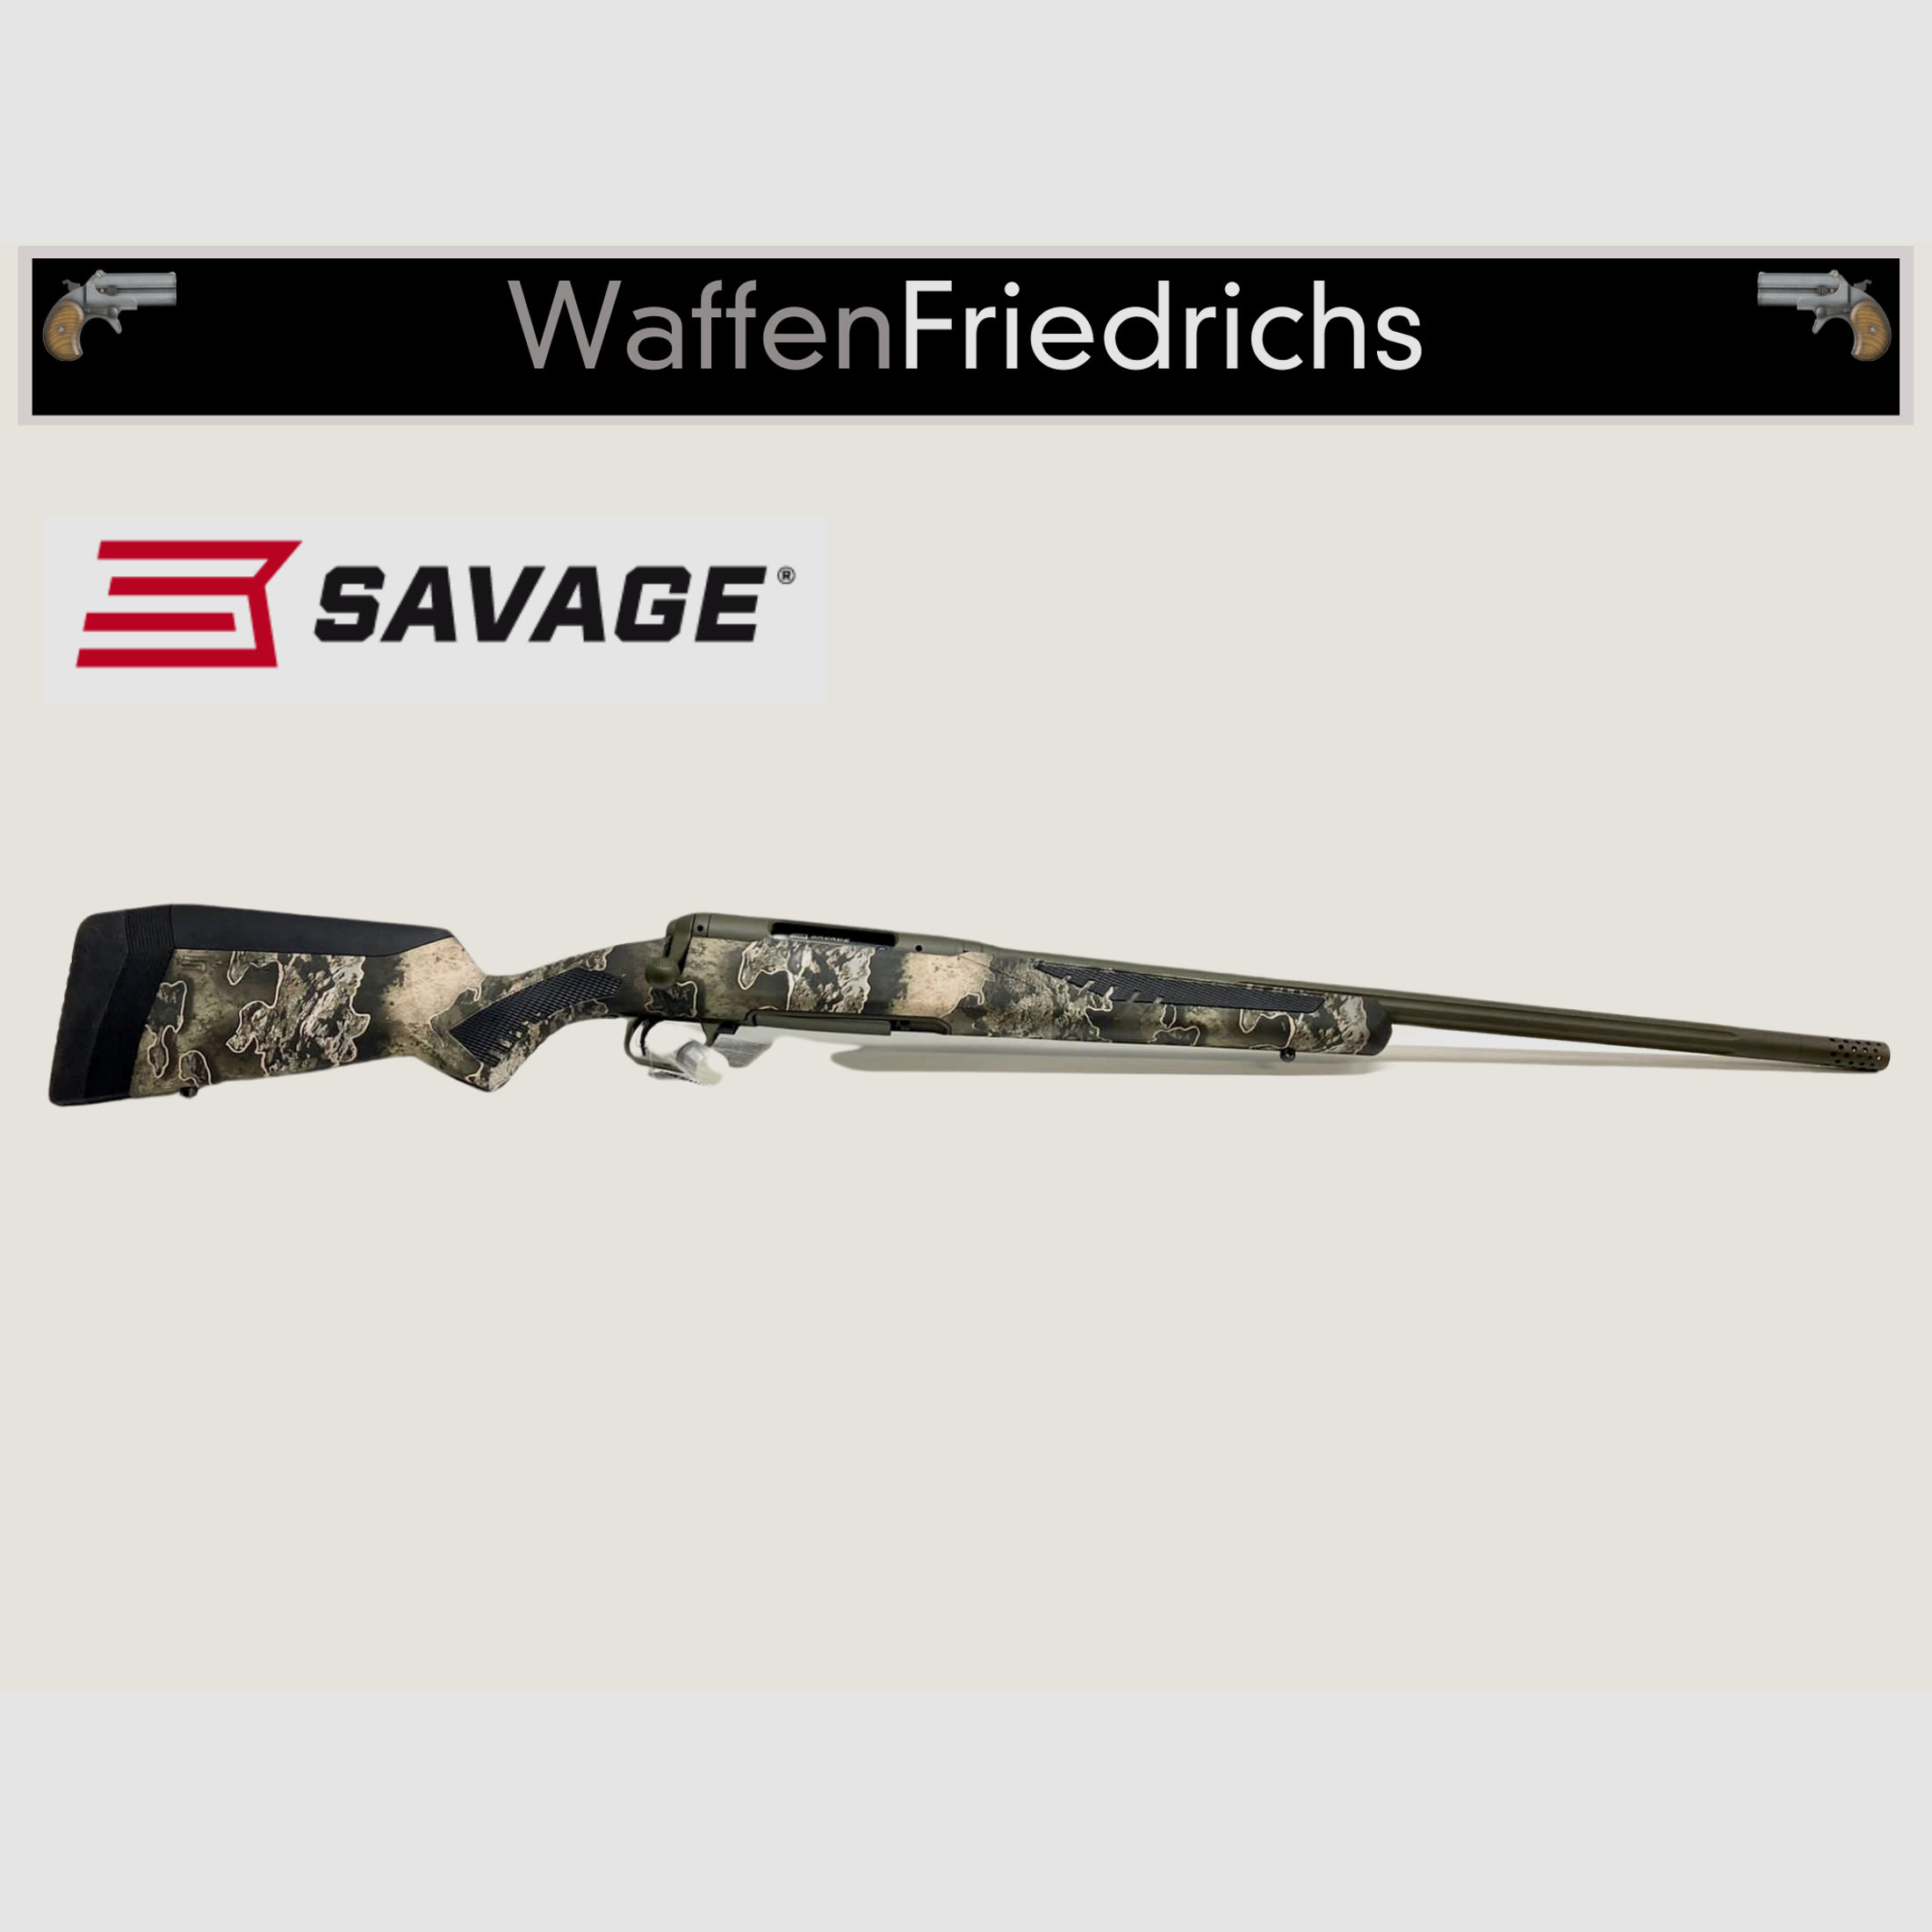 SAVAGE 110 Timberline  - WaffenFriedrichs